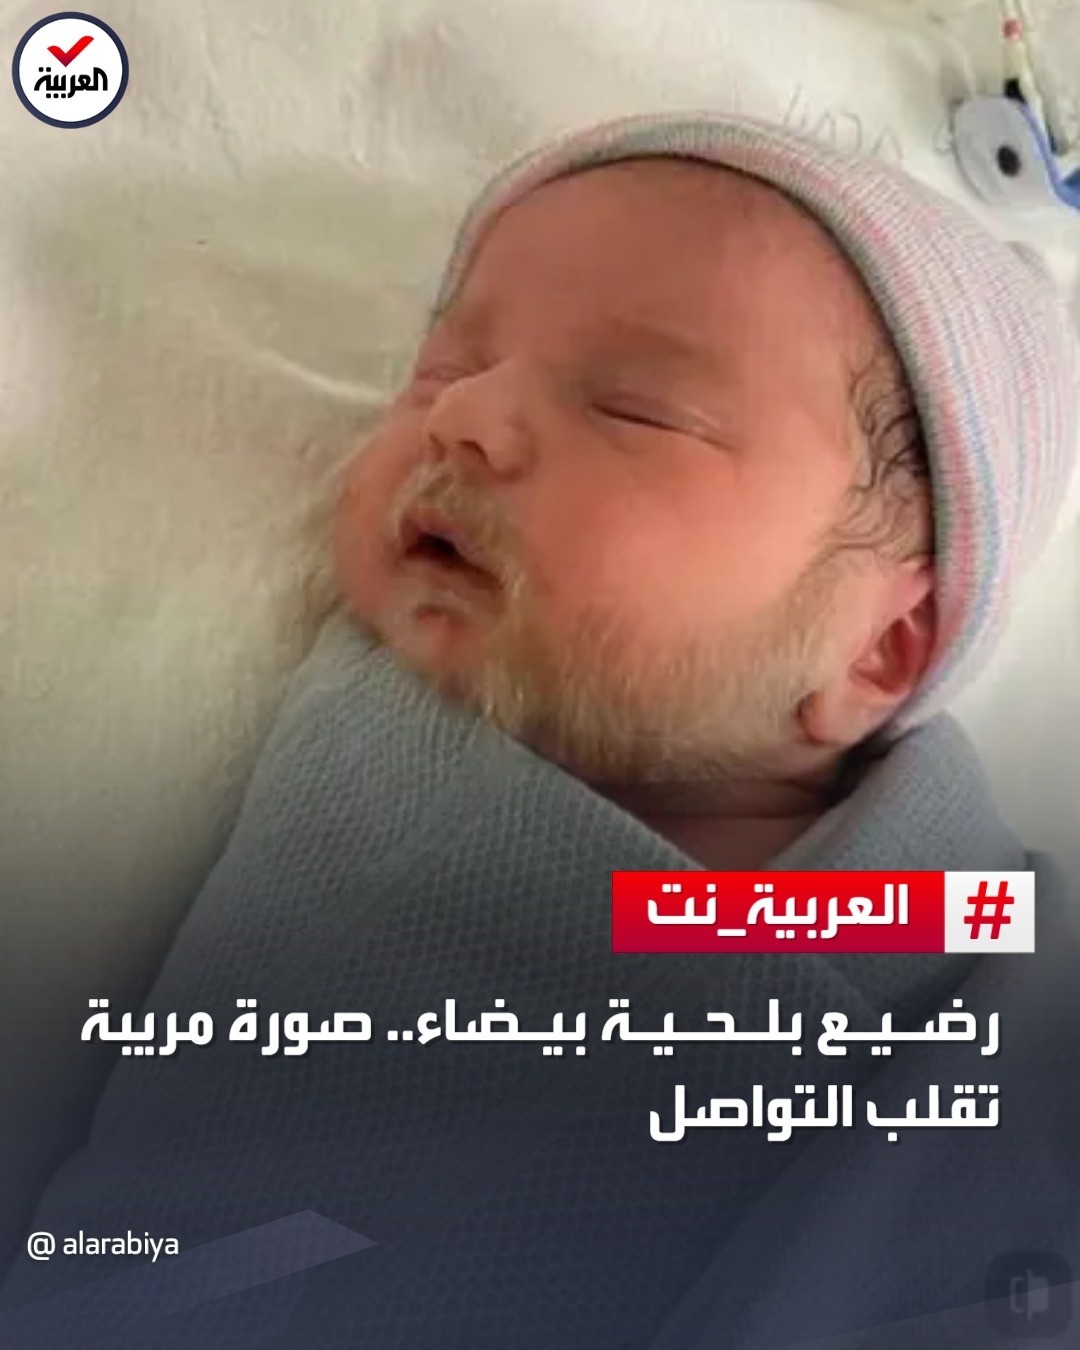 تولد نوزادی با ریش سفید در فرانسه+عکس